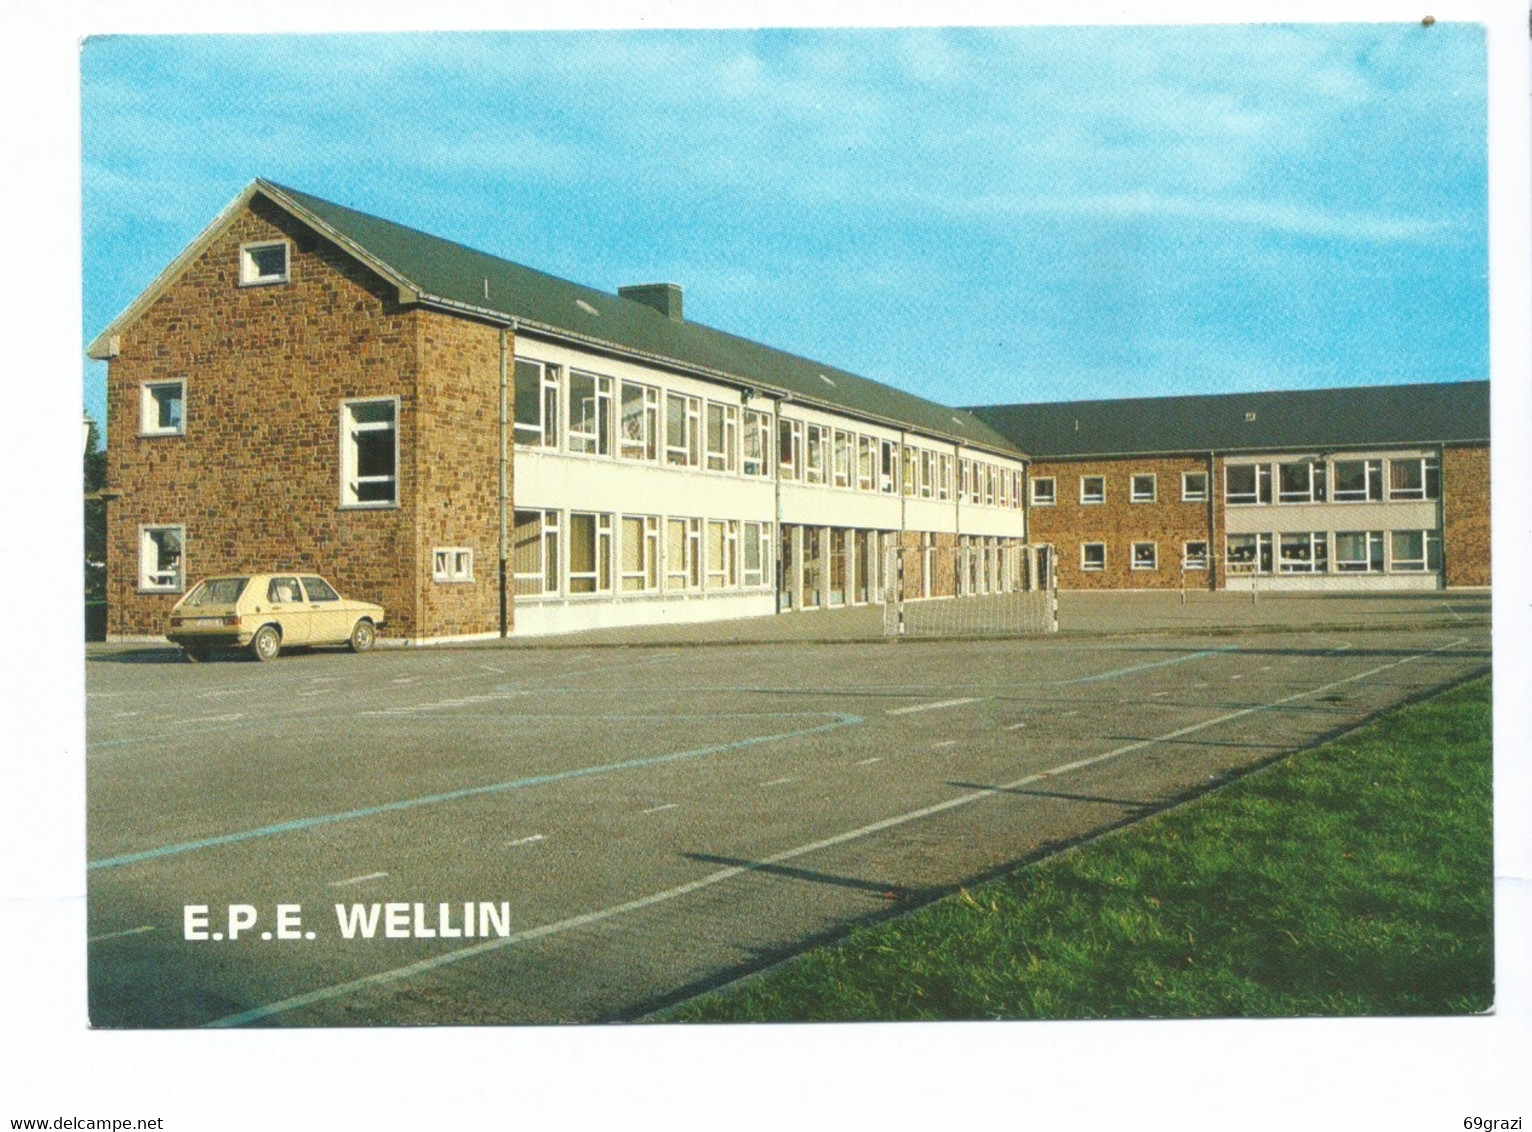 WELLIN - Ecole Primaire De L'Etat - Wellin